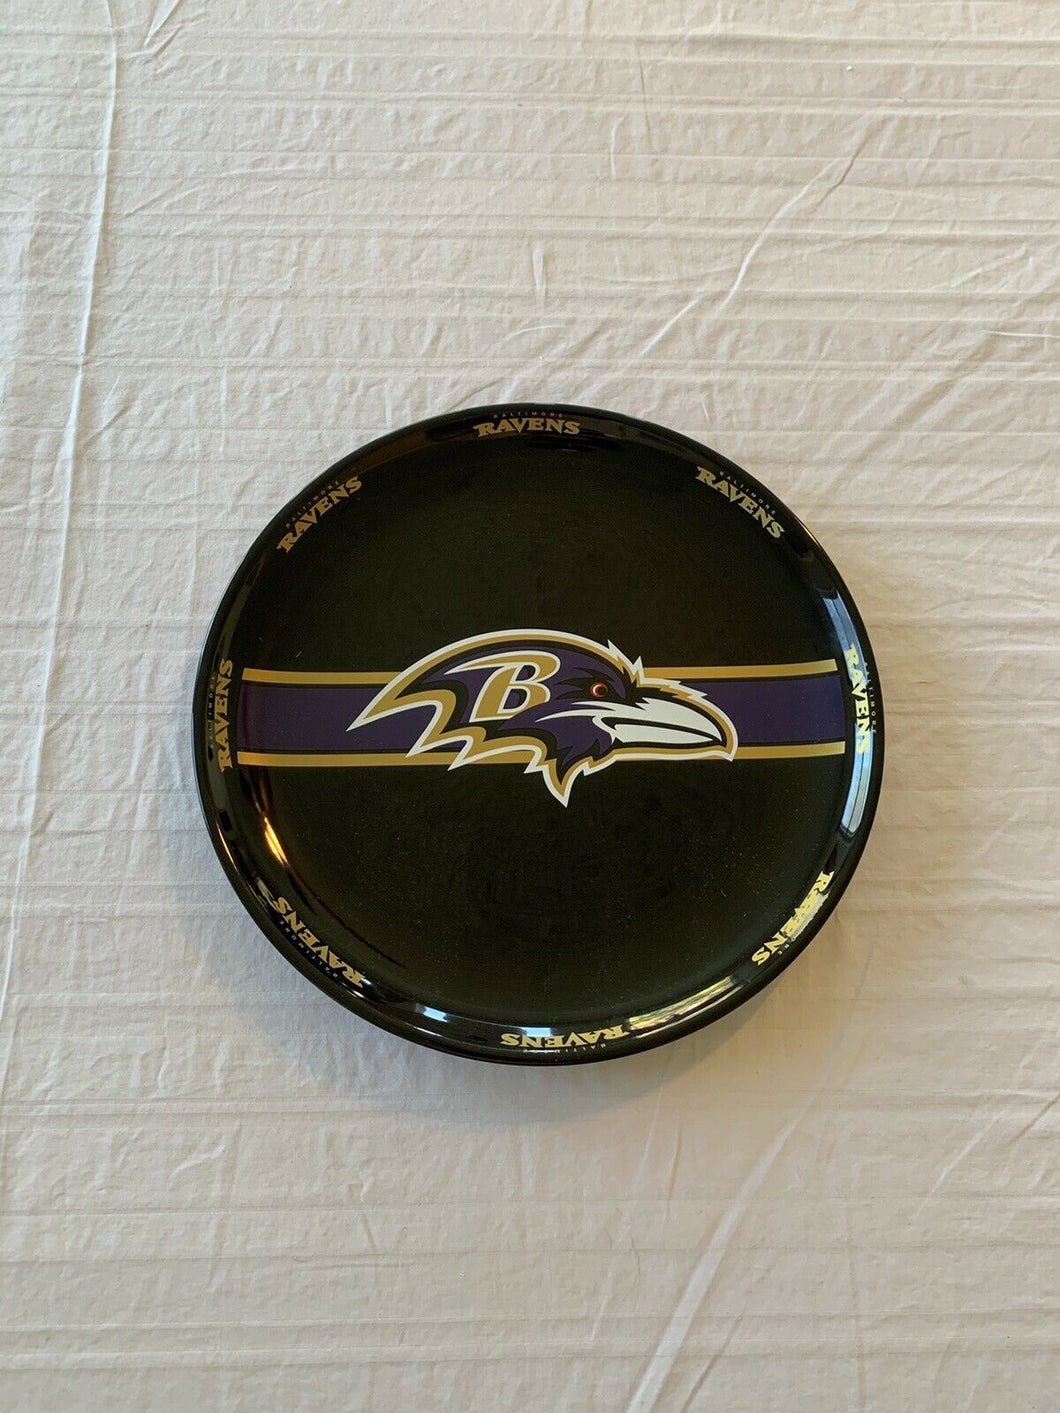 Baltimore Ravens NFL Ceramic Dinner Plate 11